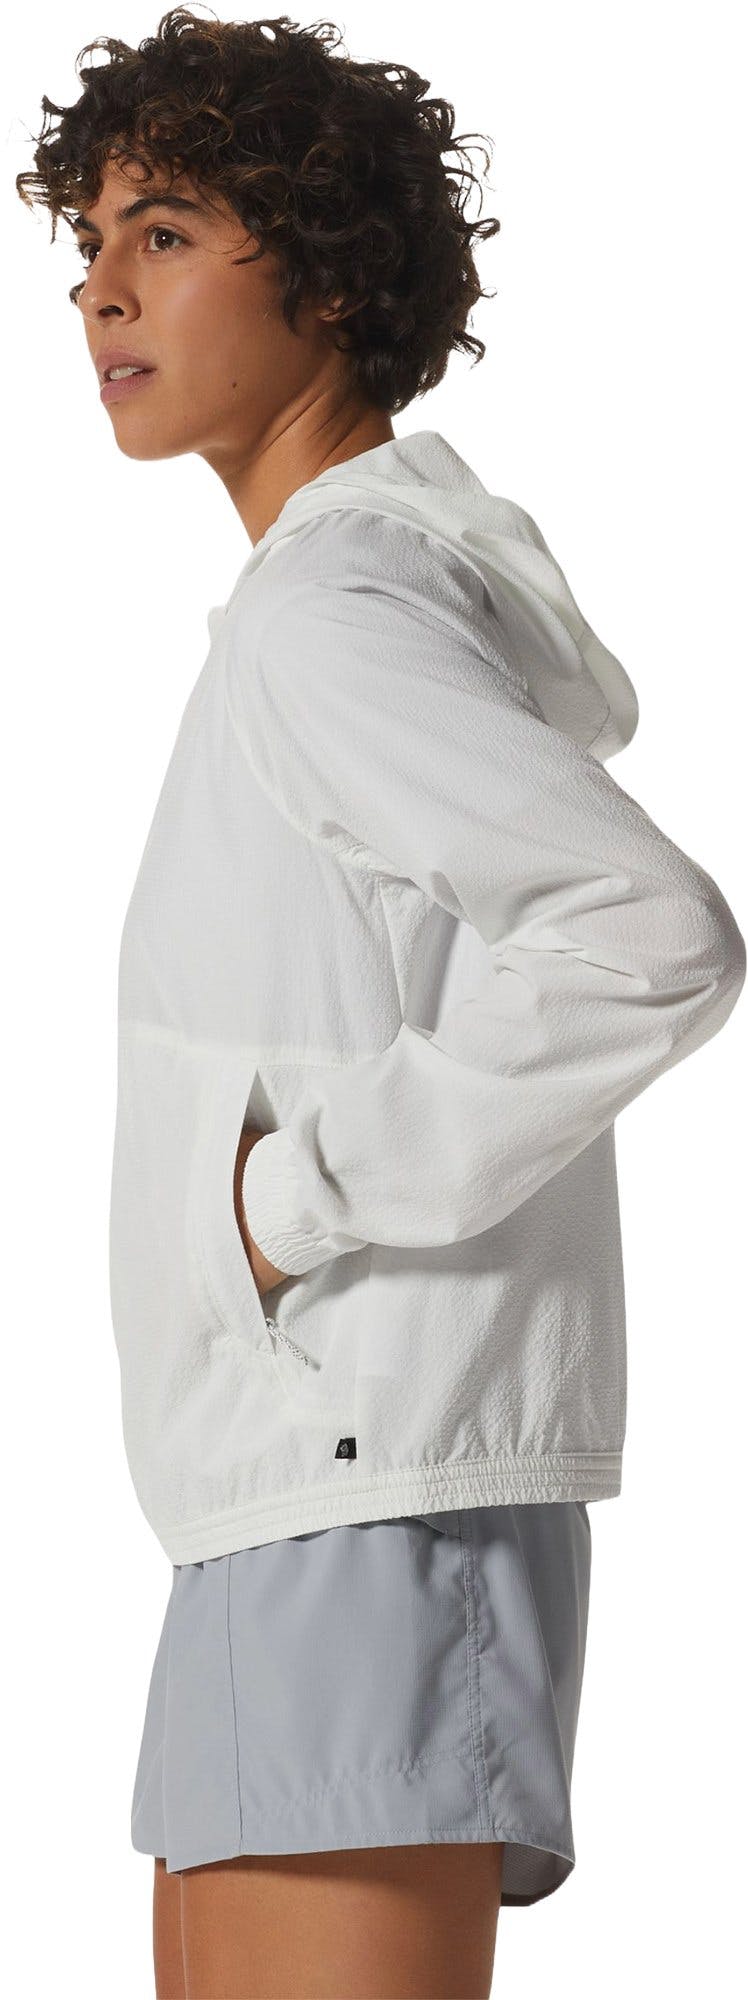 Numéro de l'image de la galerie de produits 2 pour le produit Chandail à capuchon à manches longues Sunshadow - Femme